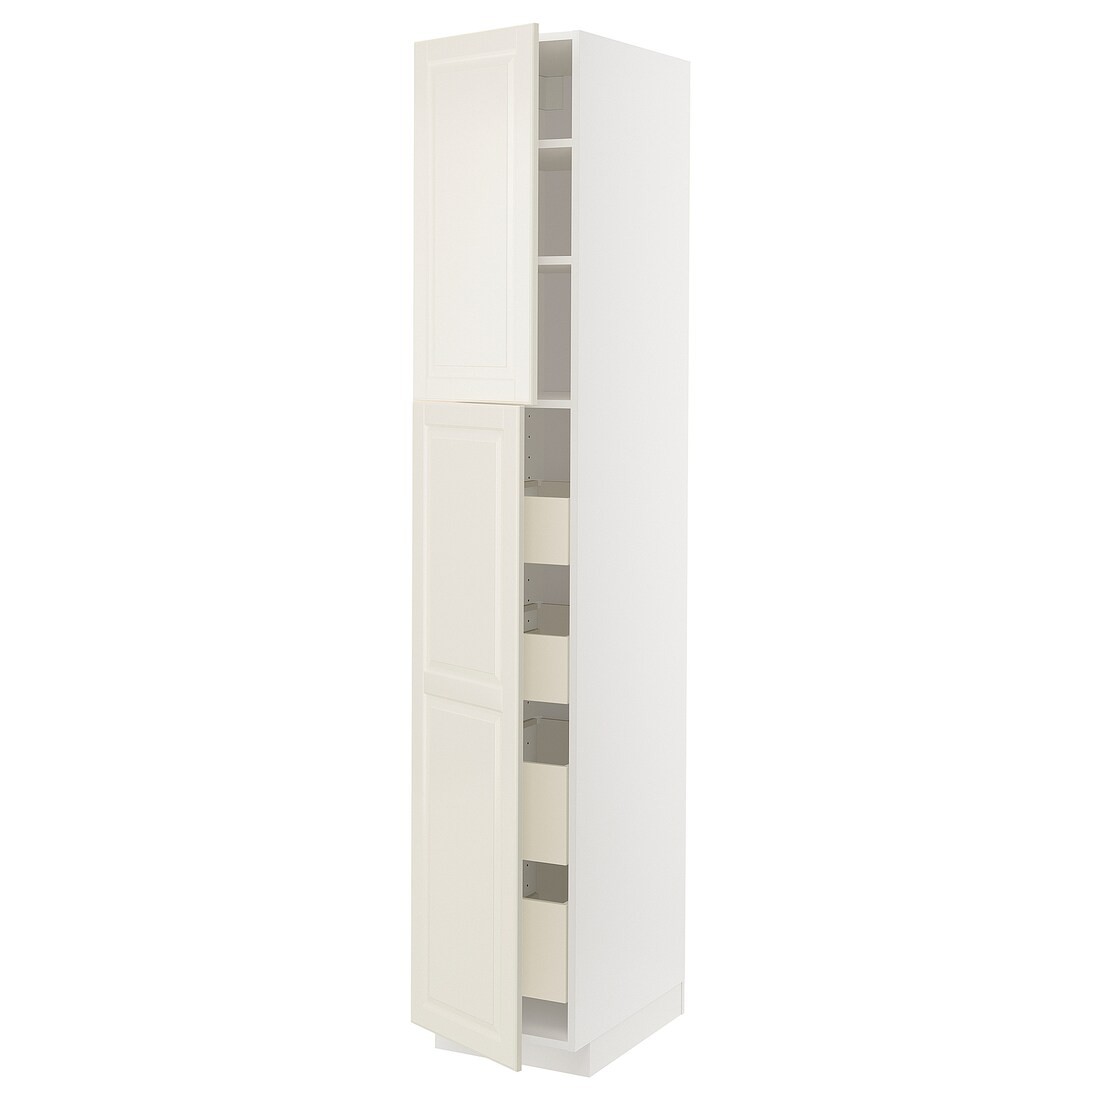 IKEA METOD МЕТОД / MAXIMERA МАКСИМЕРА Шкаф высокий 2 двери / 4 ящика, белый / Bodbyn кремовый, 40x60x220 см 39457456 394.574.56